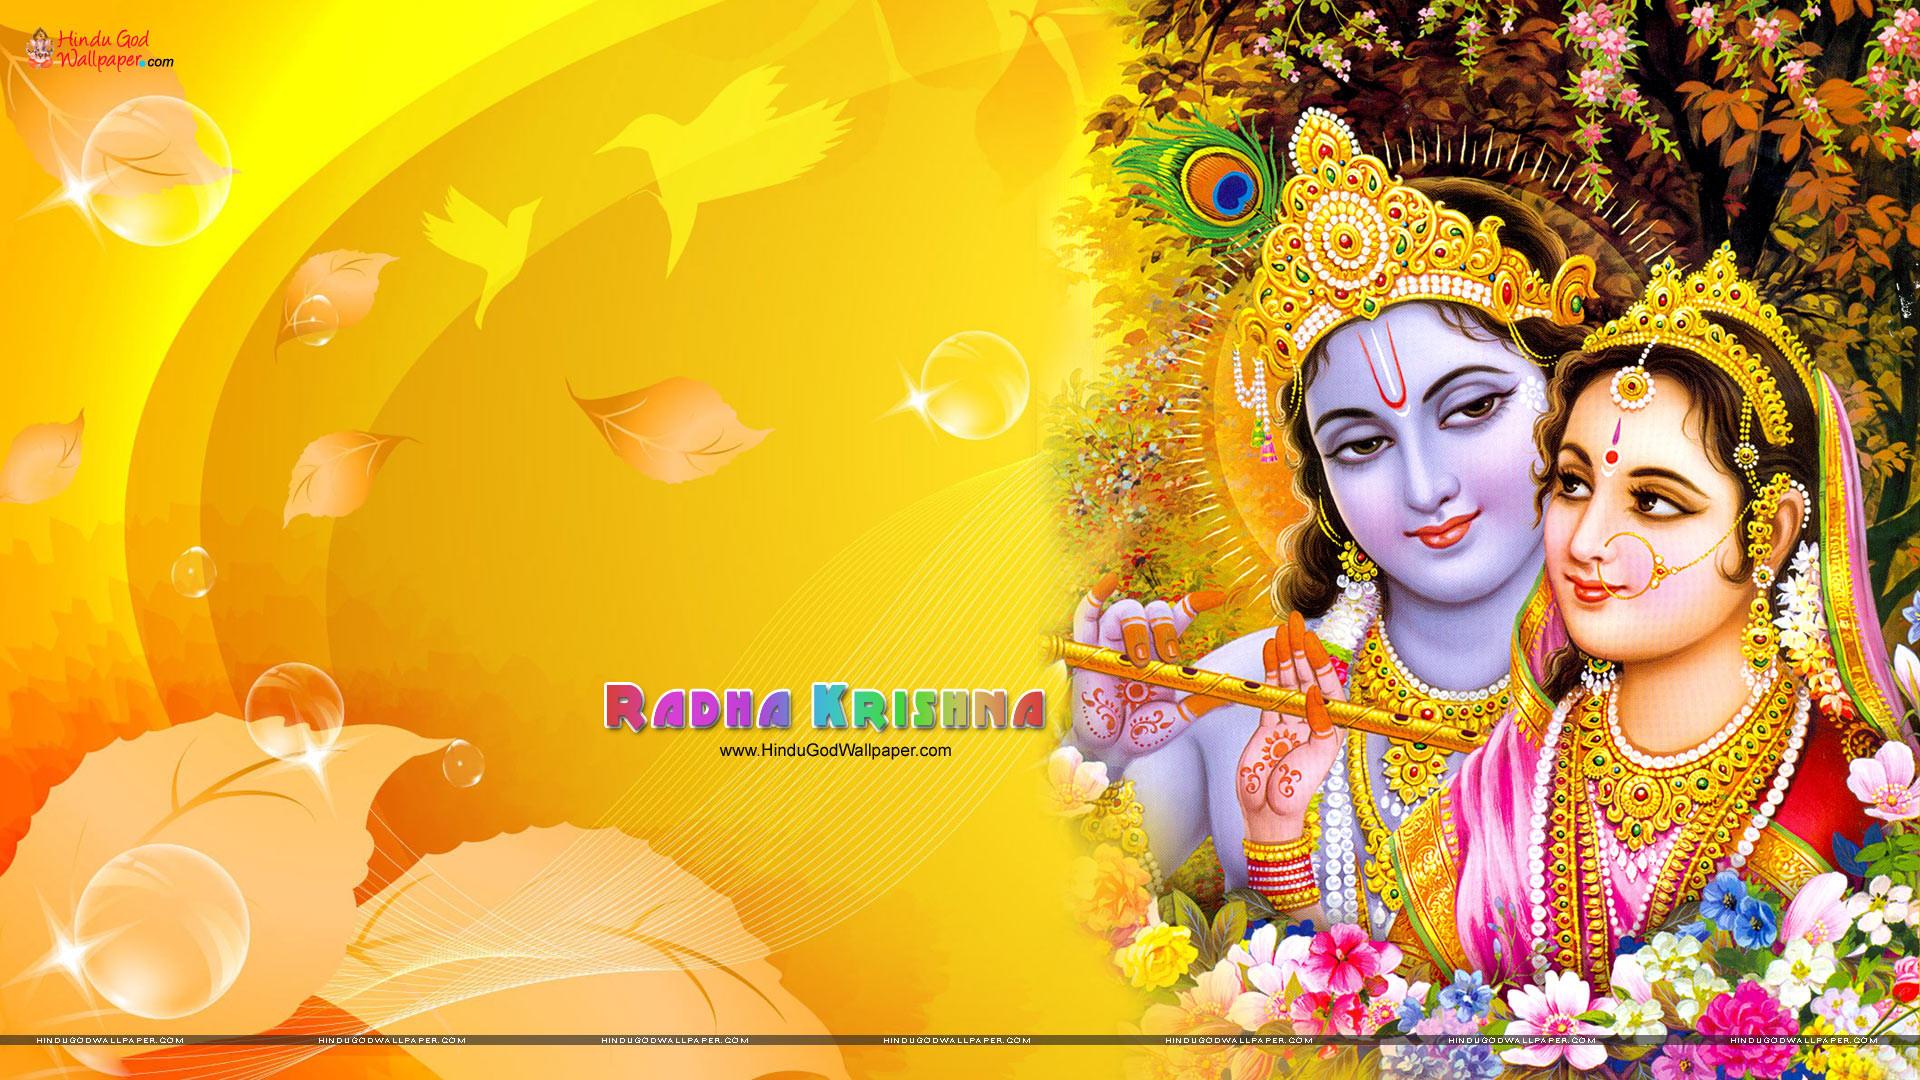 radha krishna wallpapers for desktop free download